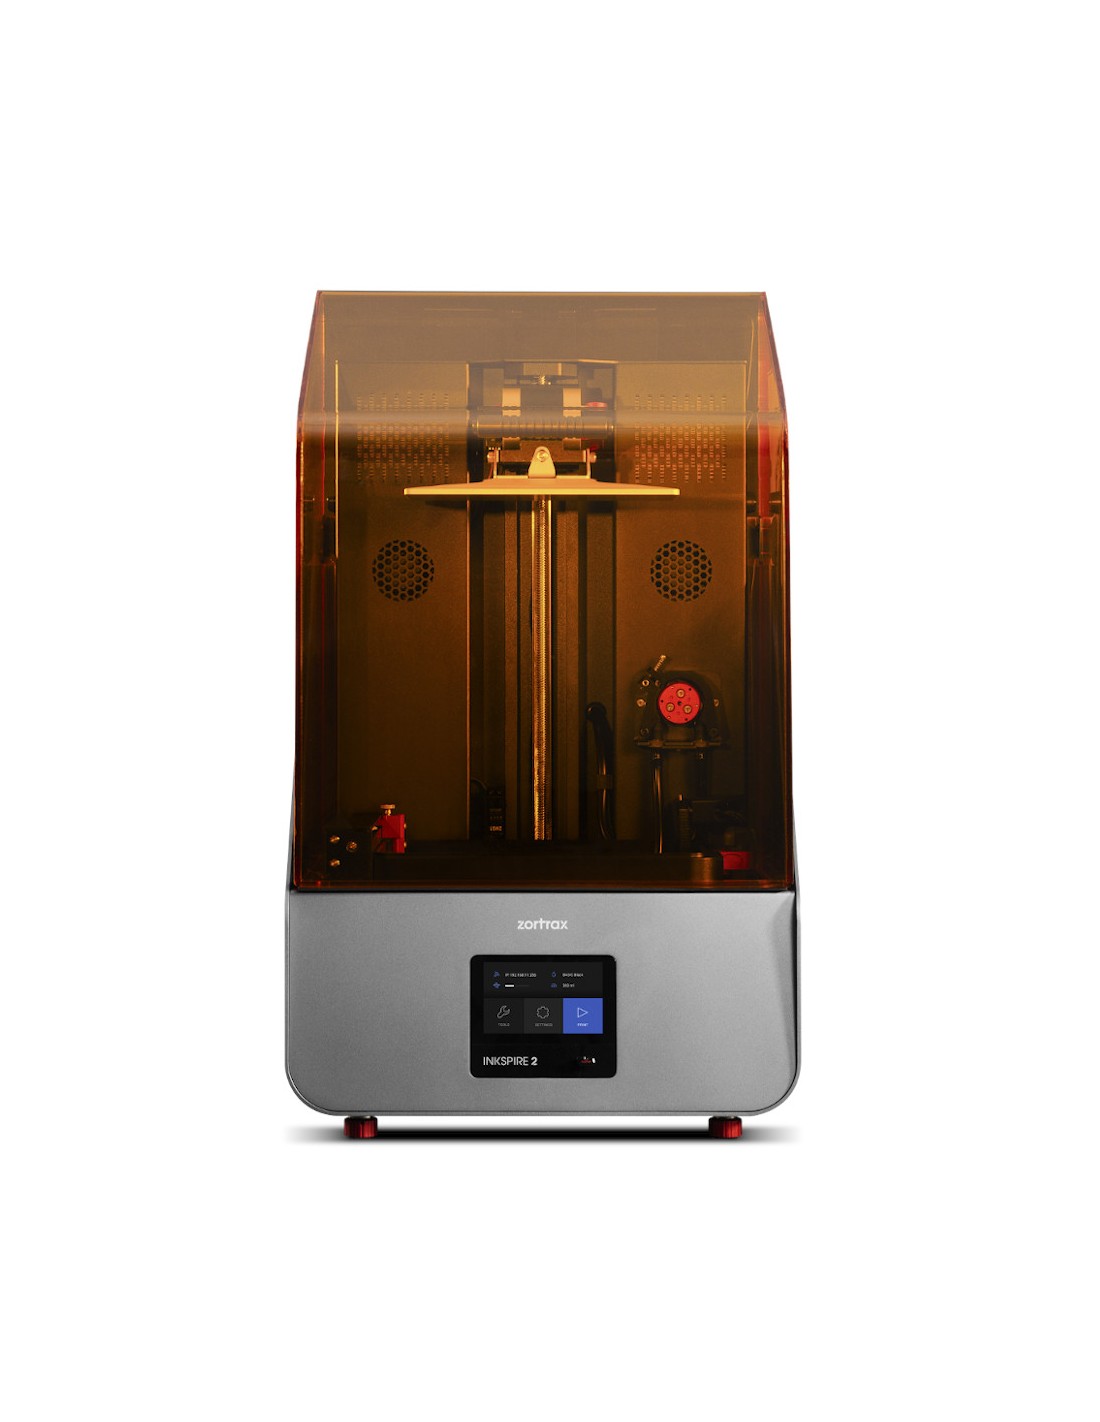 Zortrax Inkspire 2 - 3D-Drucker